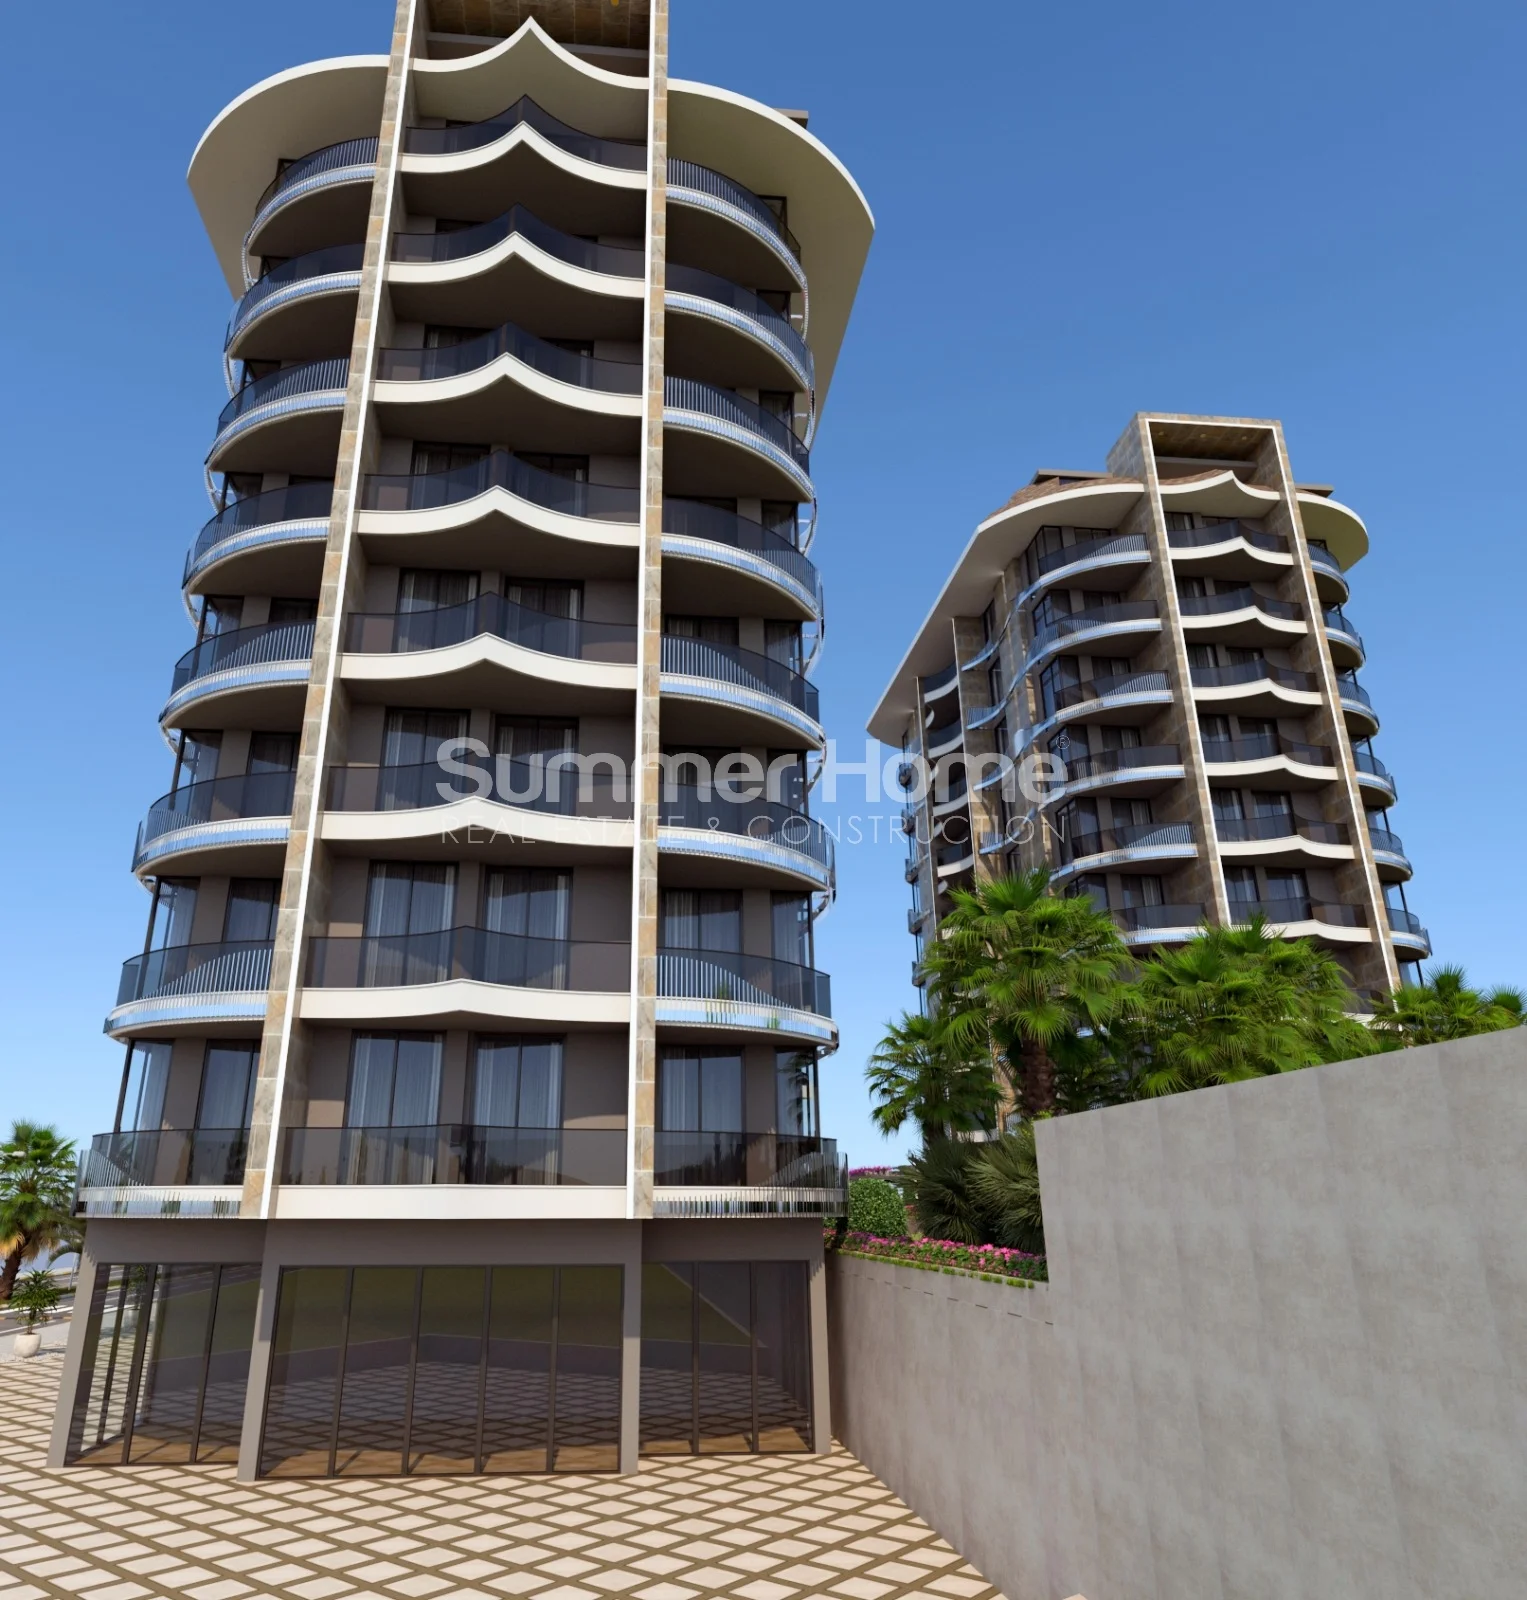 Apartamente moderne me pamje nga deti në Tosmurin e mrekullueshëm general - 12